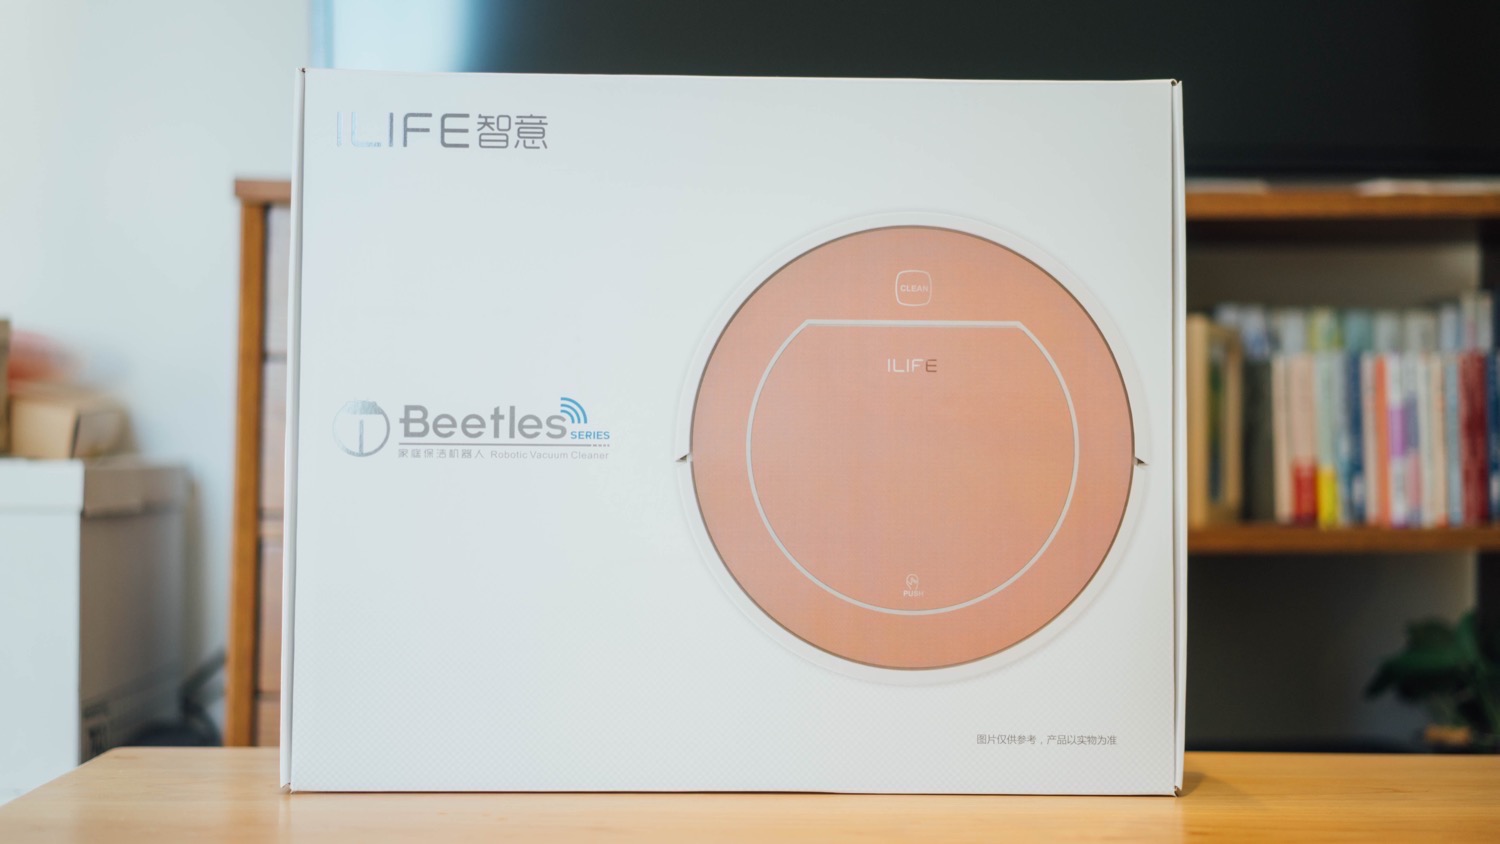 ILIFE beetles 1